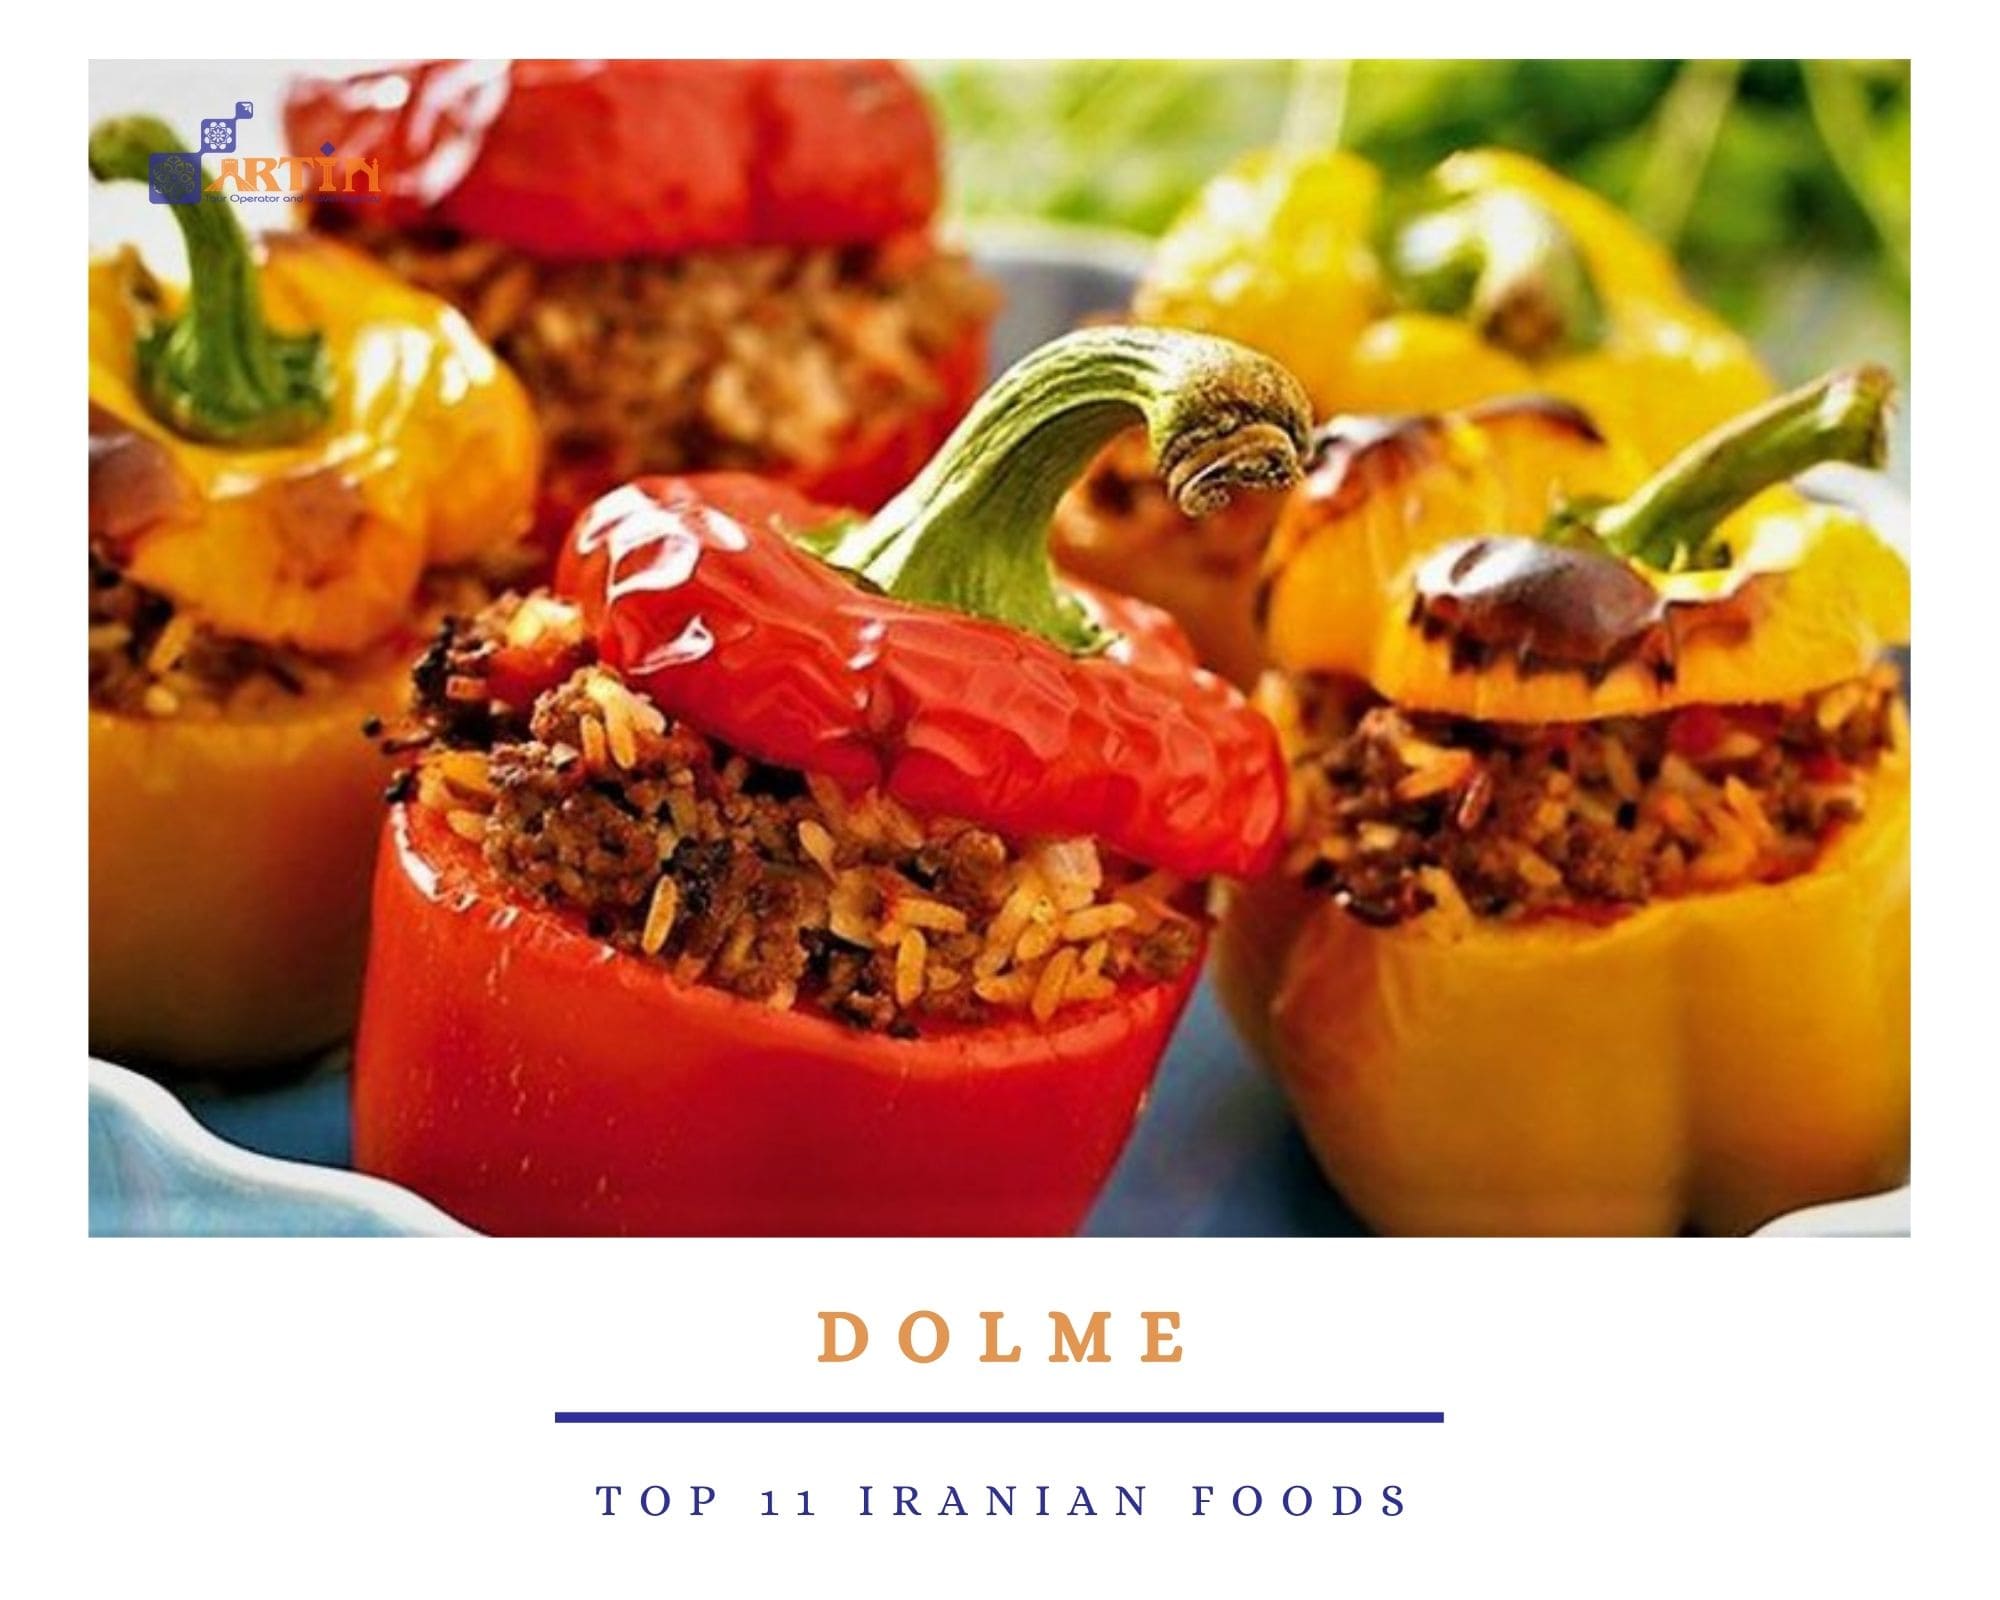 Top-11-Iranian-foods-travelartin